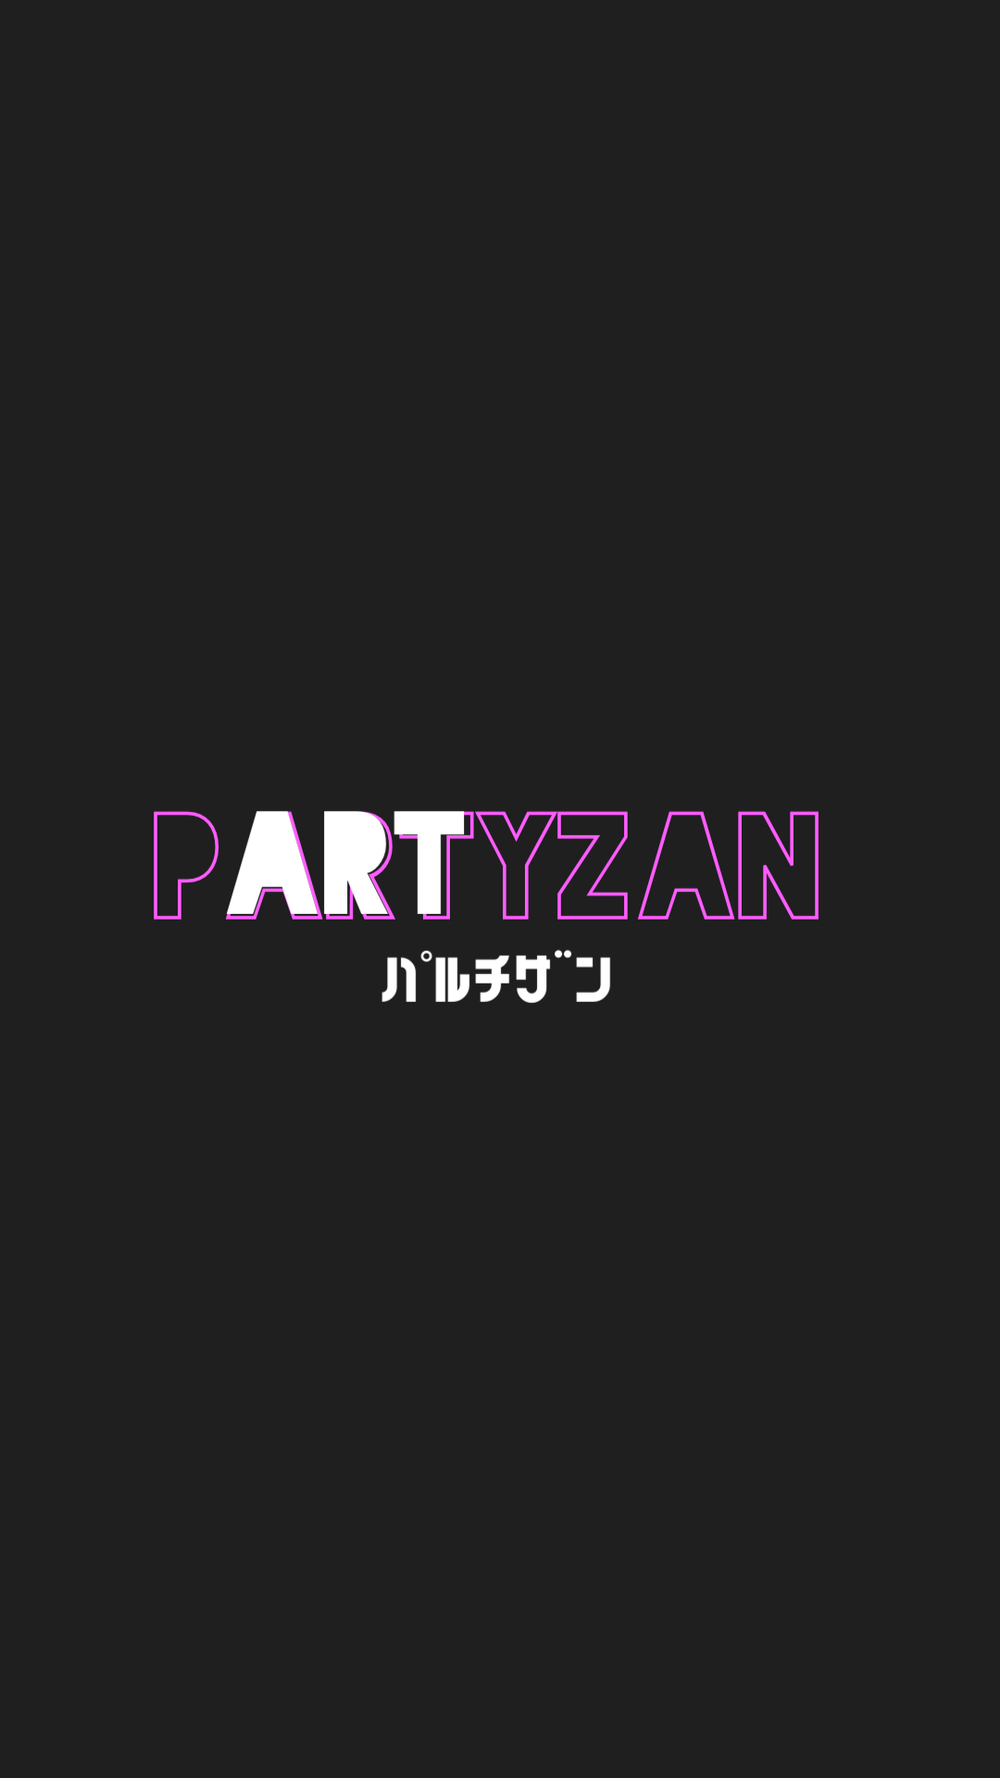 アートイベントに参加しよう「PARTYZAN」